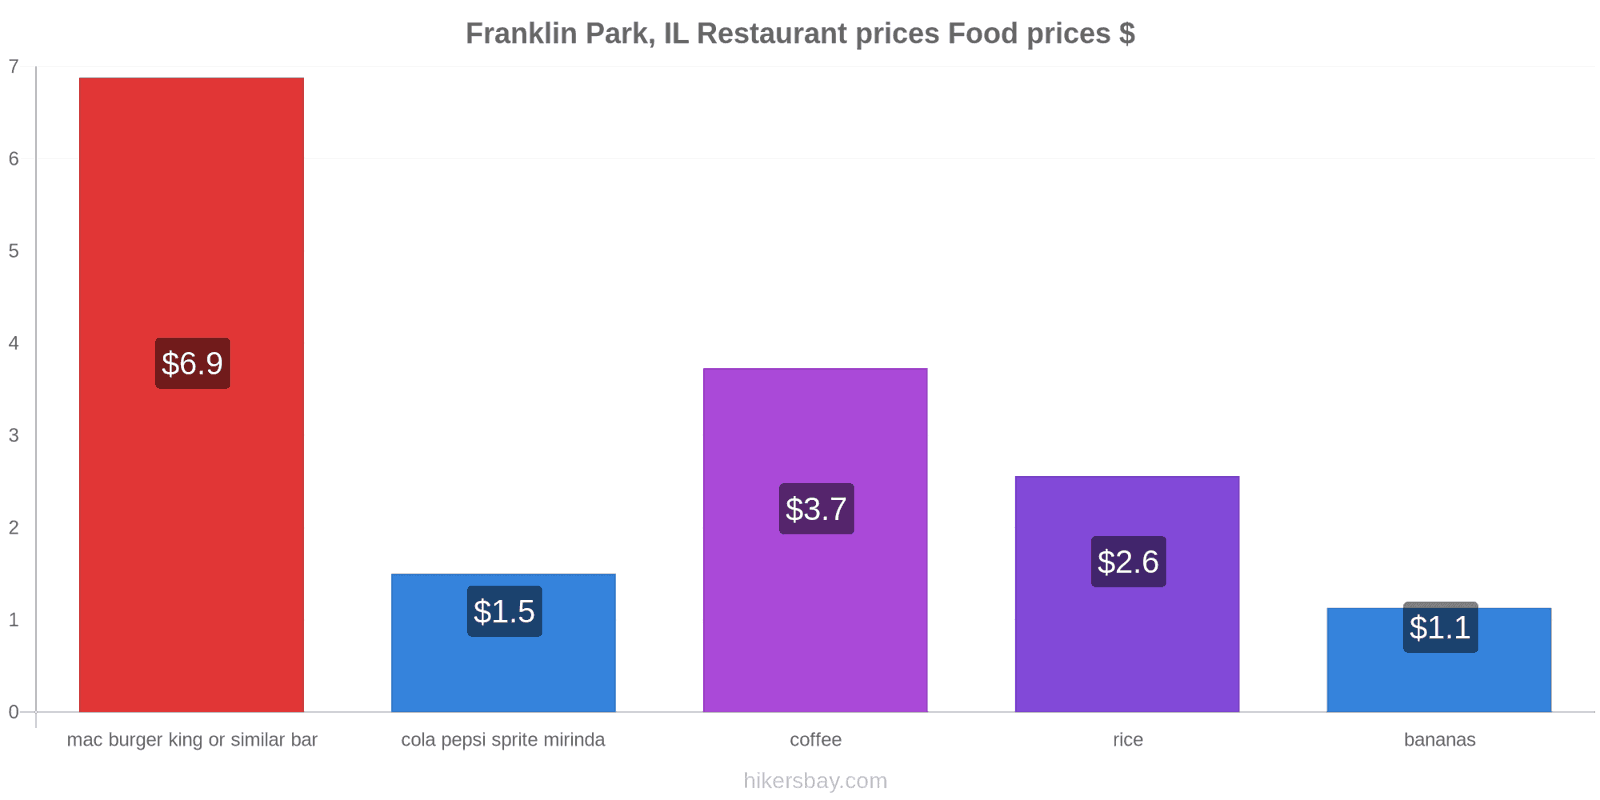 Franklin Park, IL price changes hikersbay.com